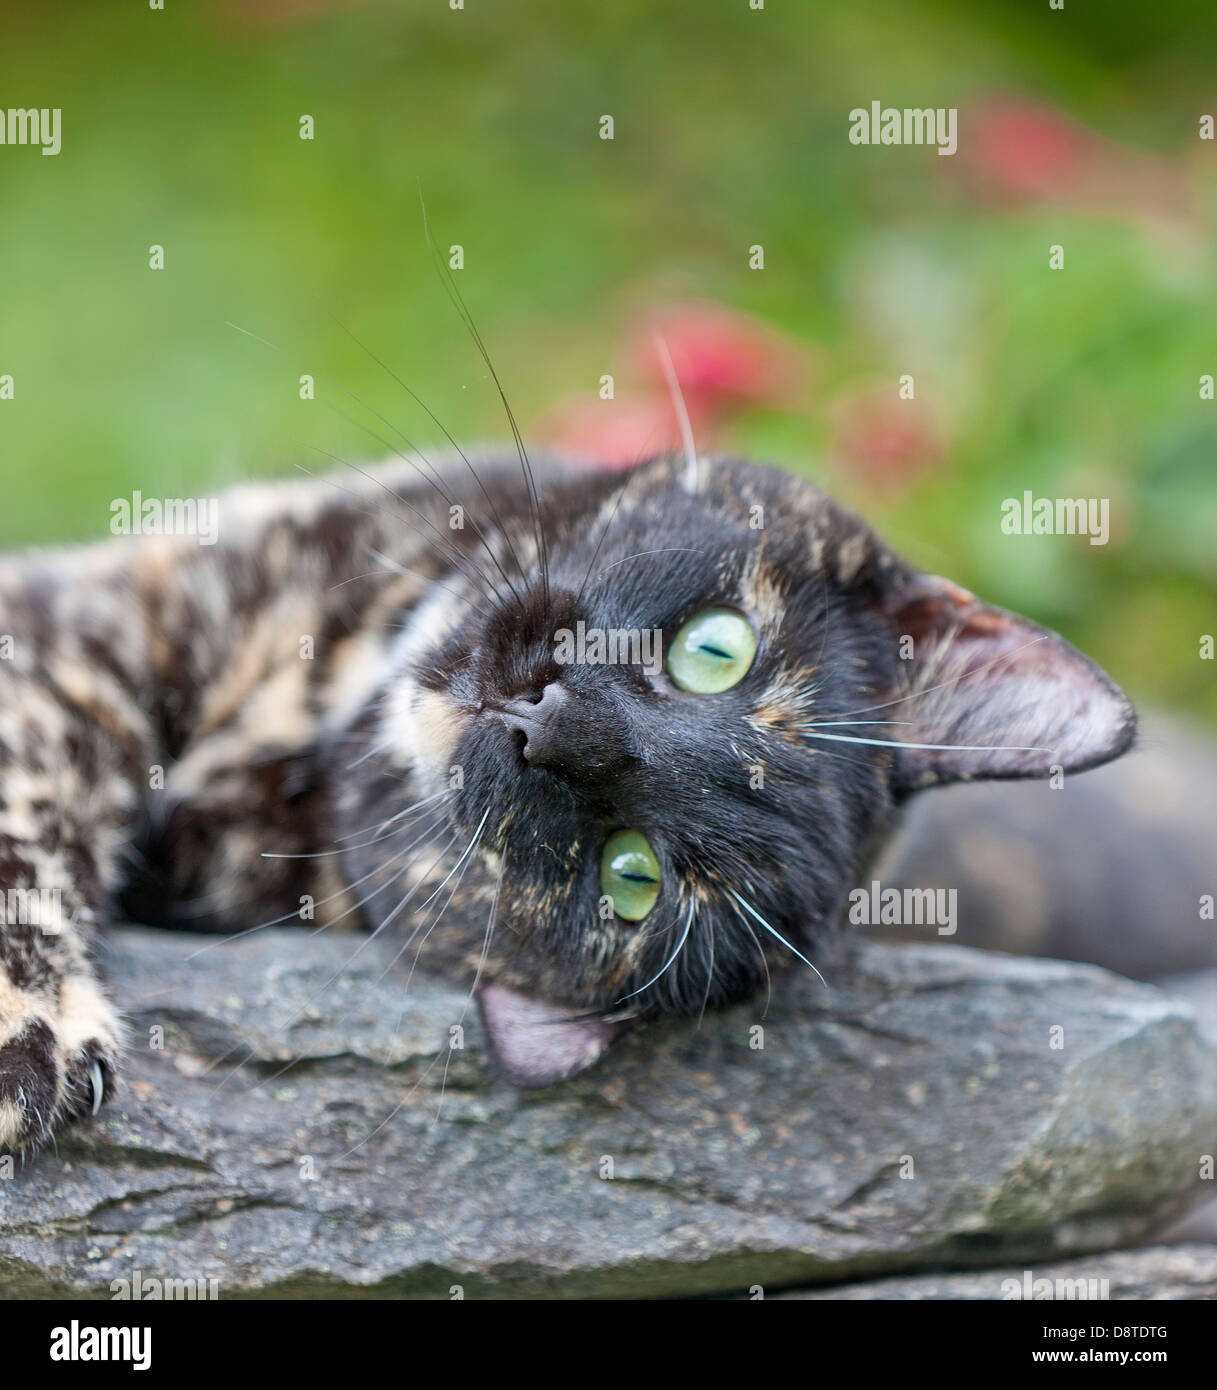 Ritratto di gatto con gli occhi verdi, Norvegia Foto Stock